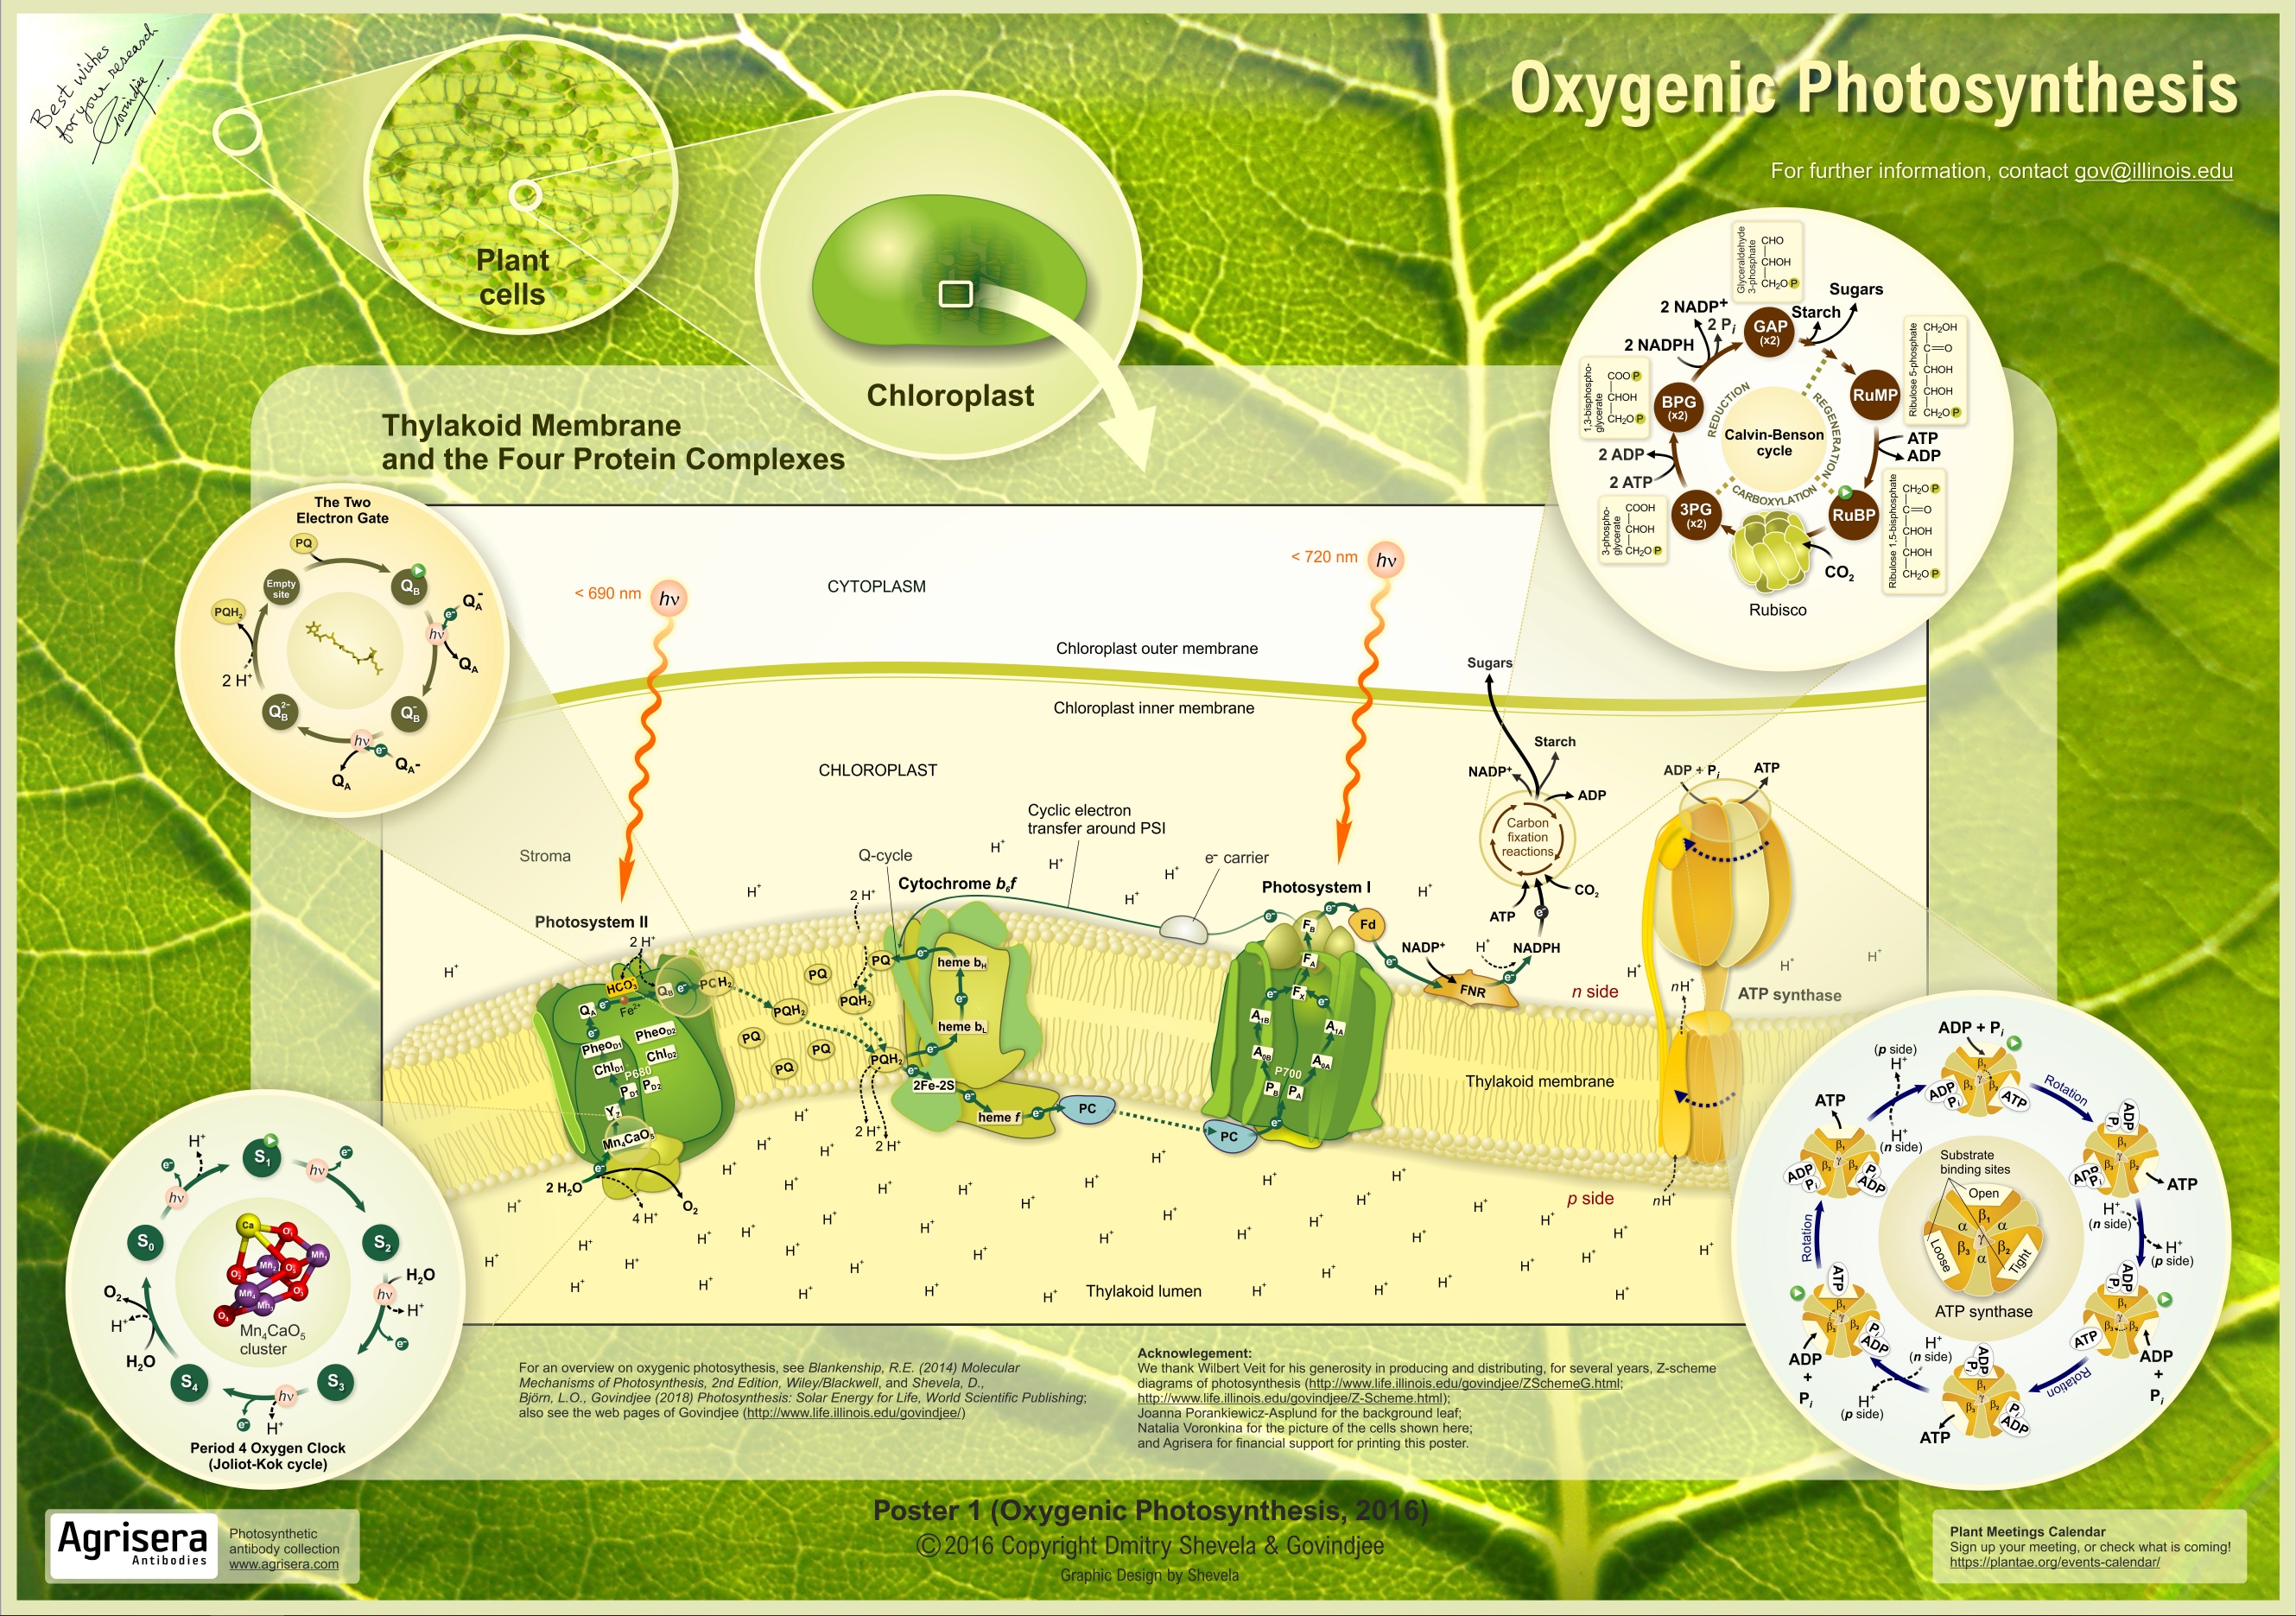 Oxygenetic Photosynthesis